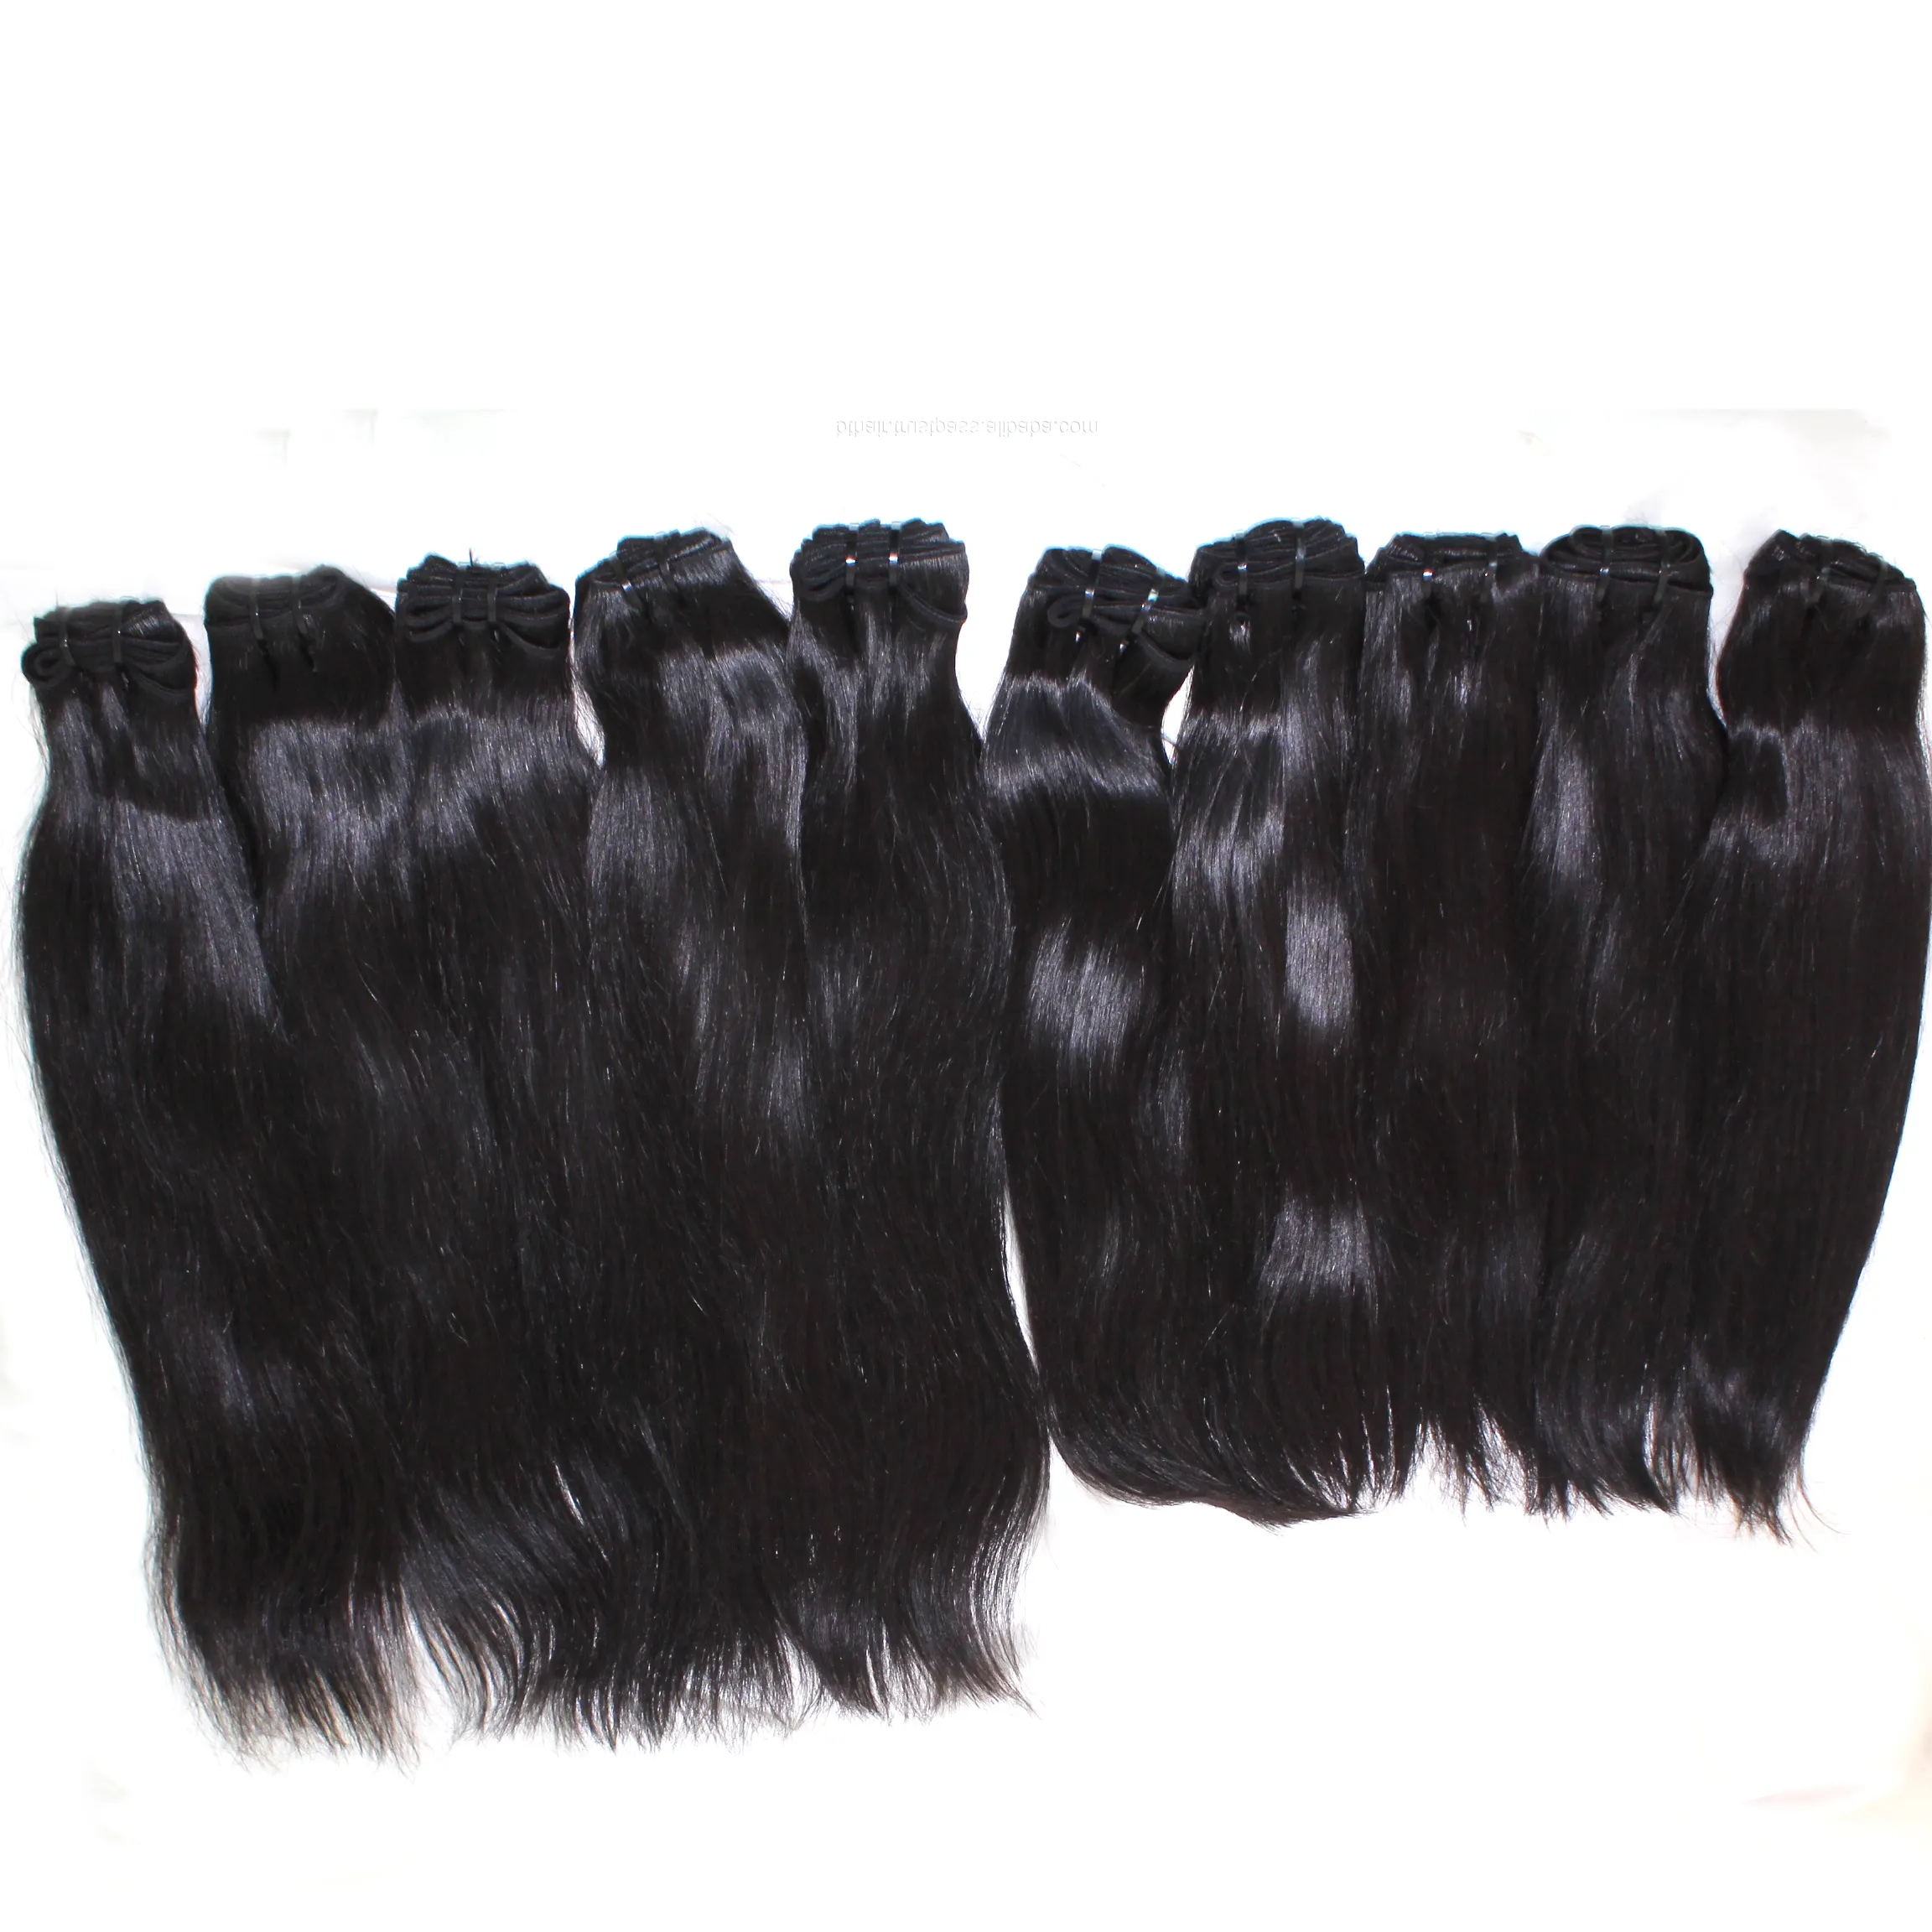 Вьетнамские необработанные девственные волосы в уток с двойной вытяжкой, лучшие продавцы волос, натуральные индийские волосы